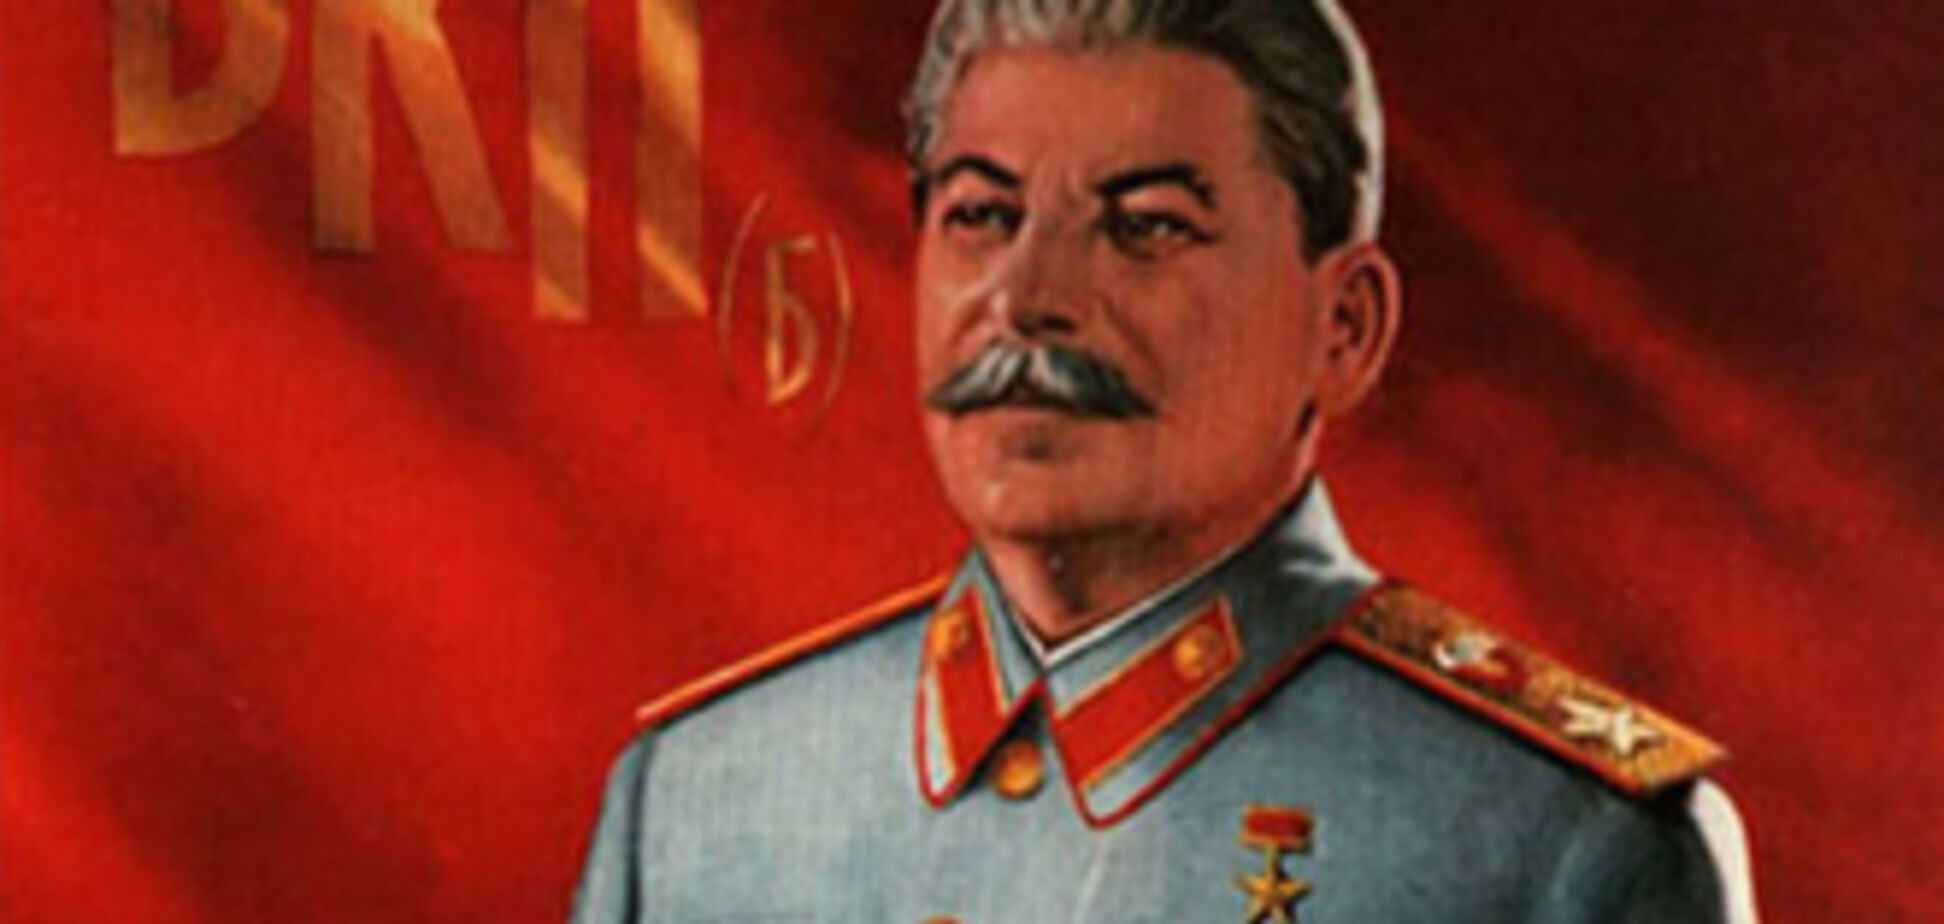 Госдума РФ просит не сравнивать нацизм и режим Сталина